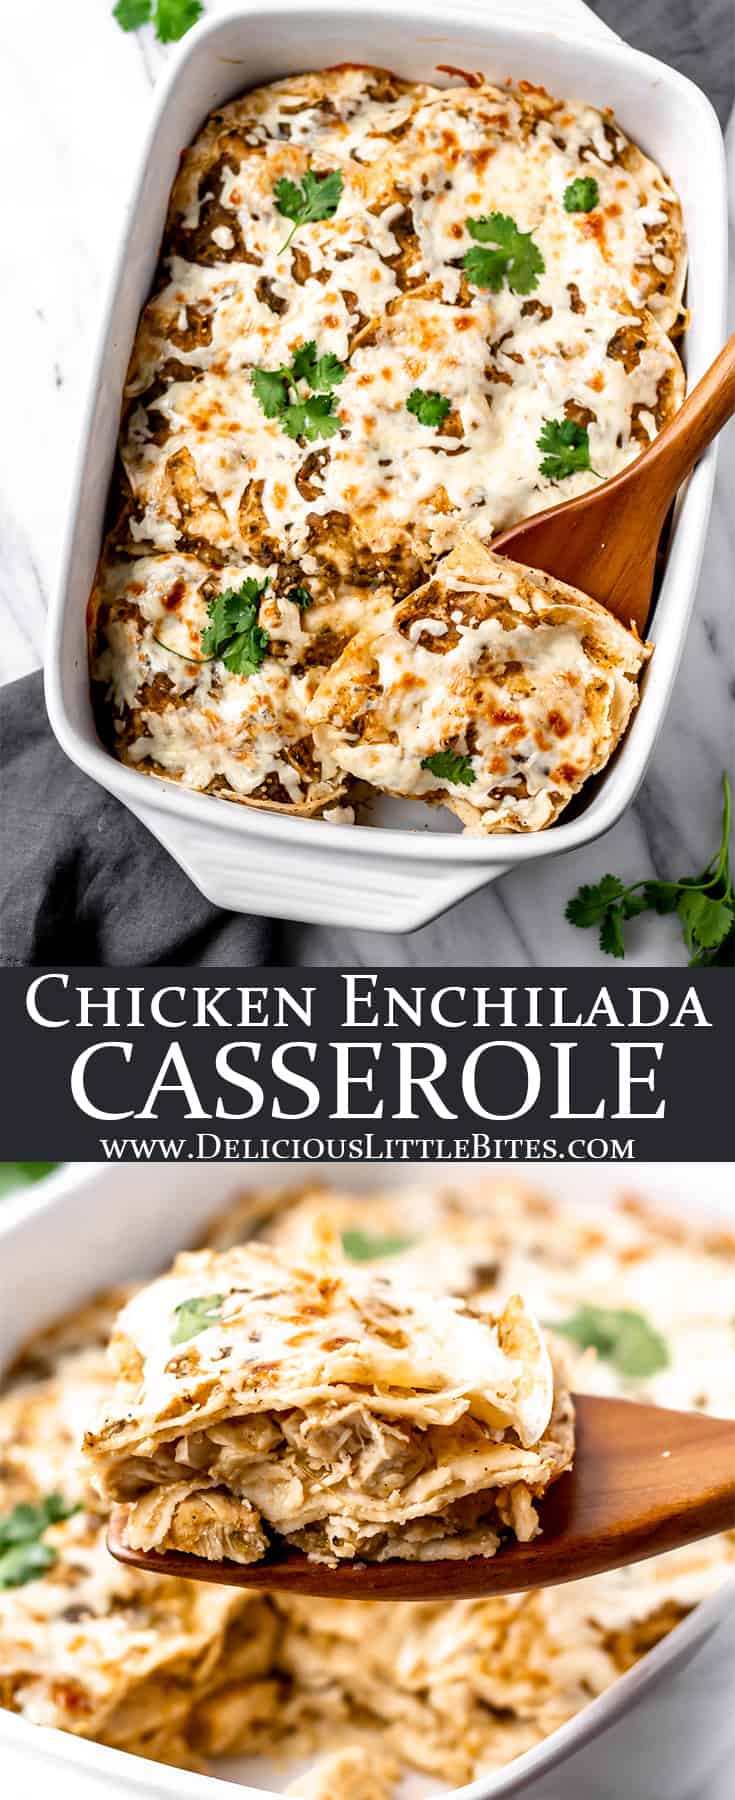 Tomatillo Chicken Enchilada Casserole - Delicious Little Bites